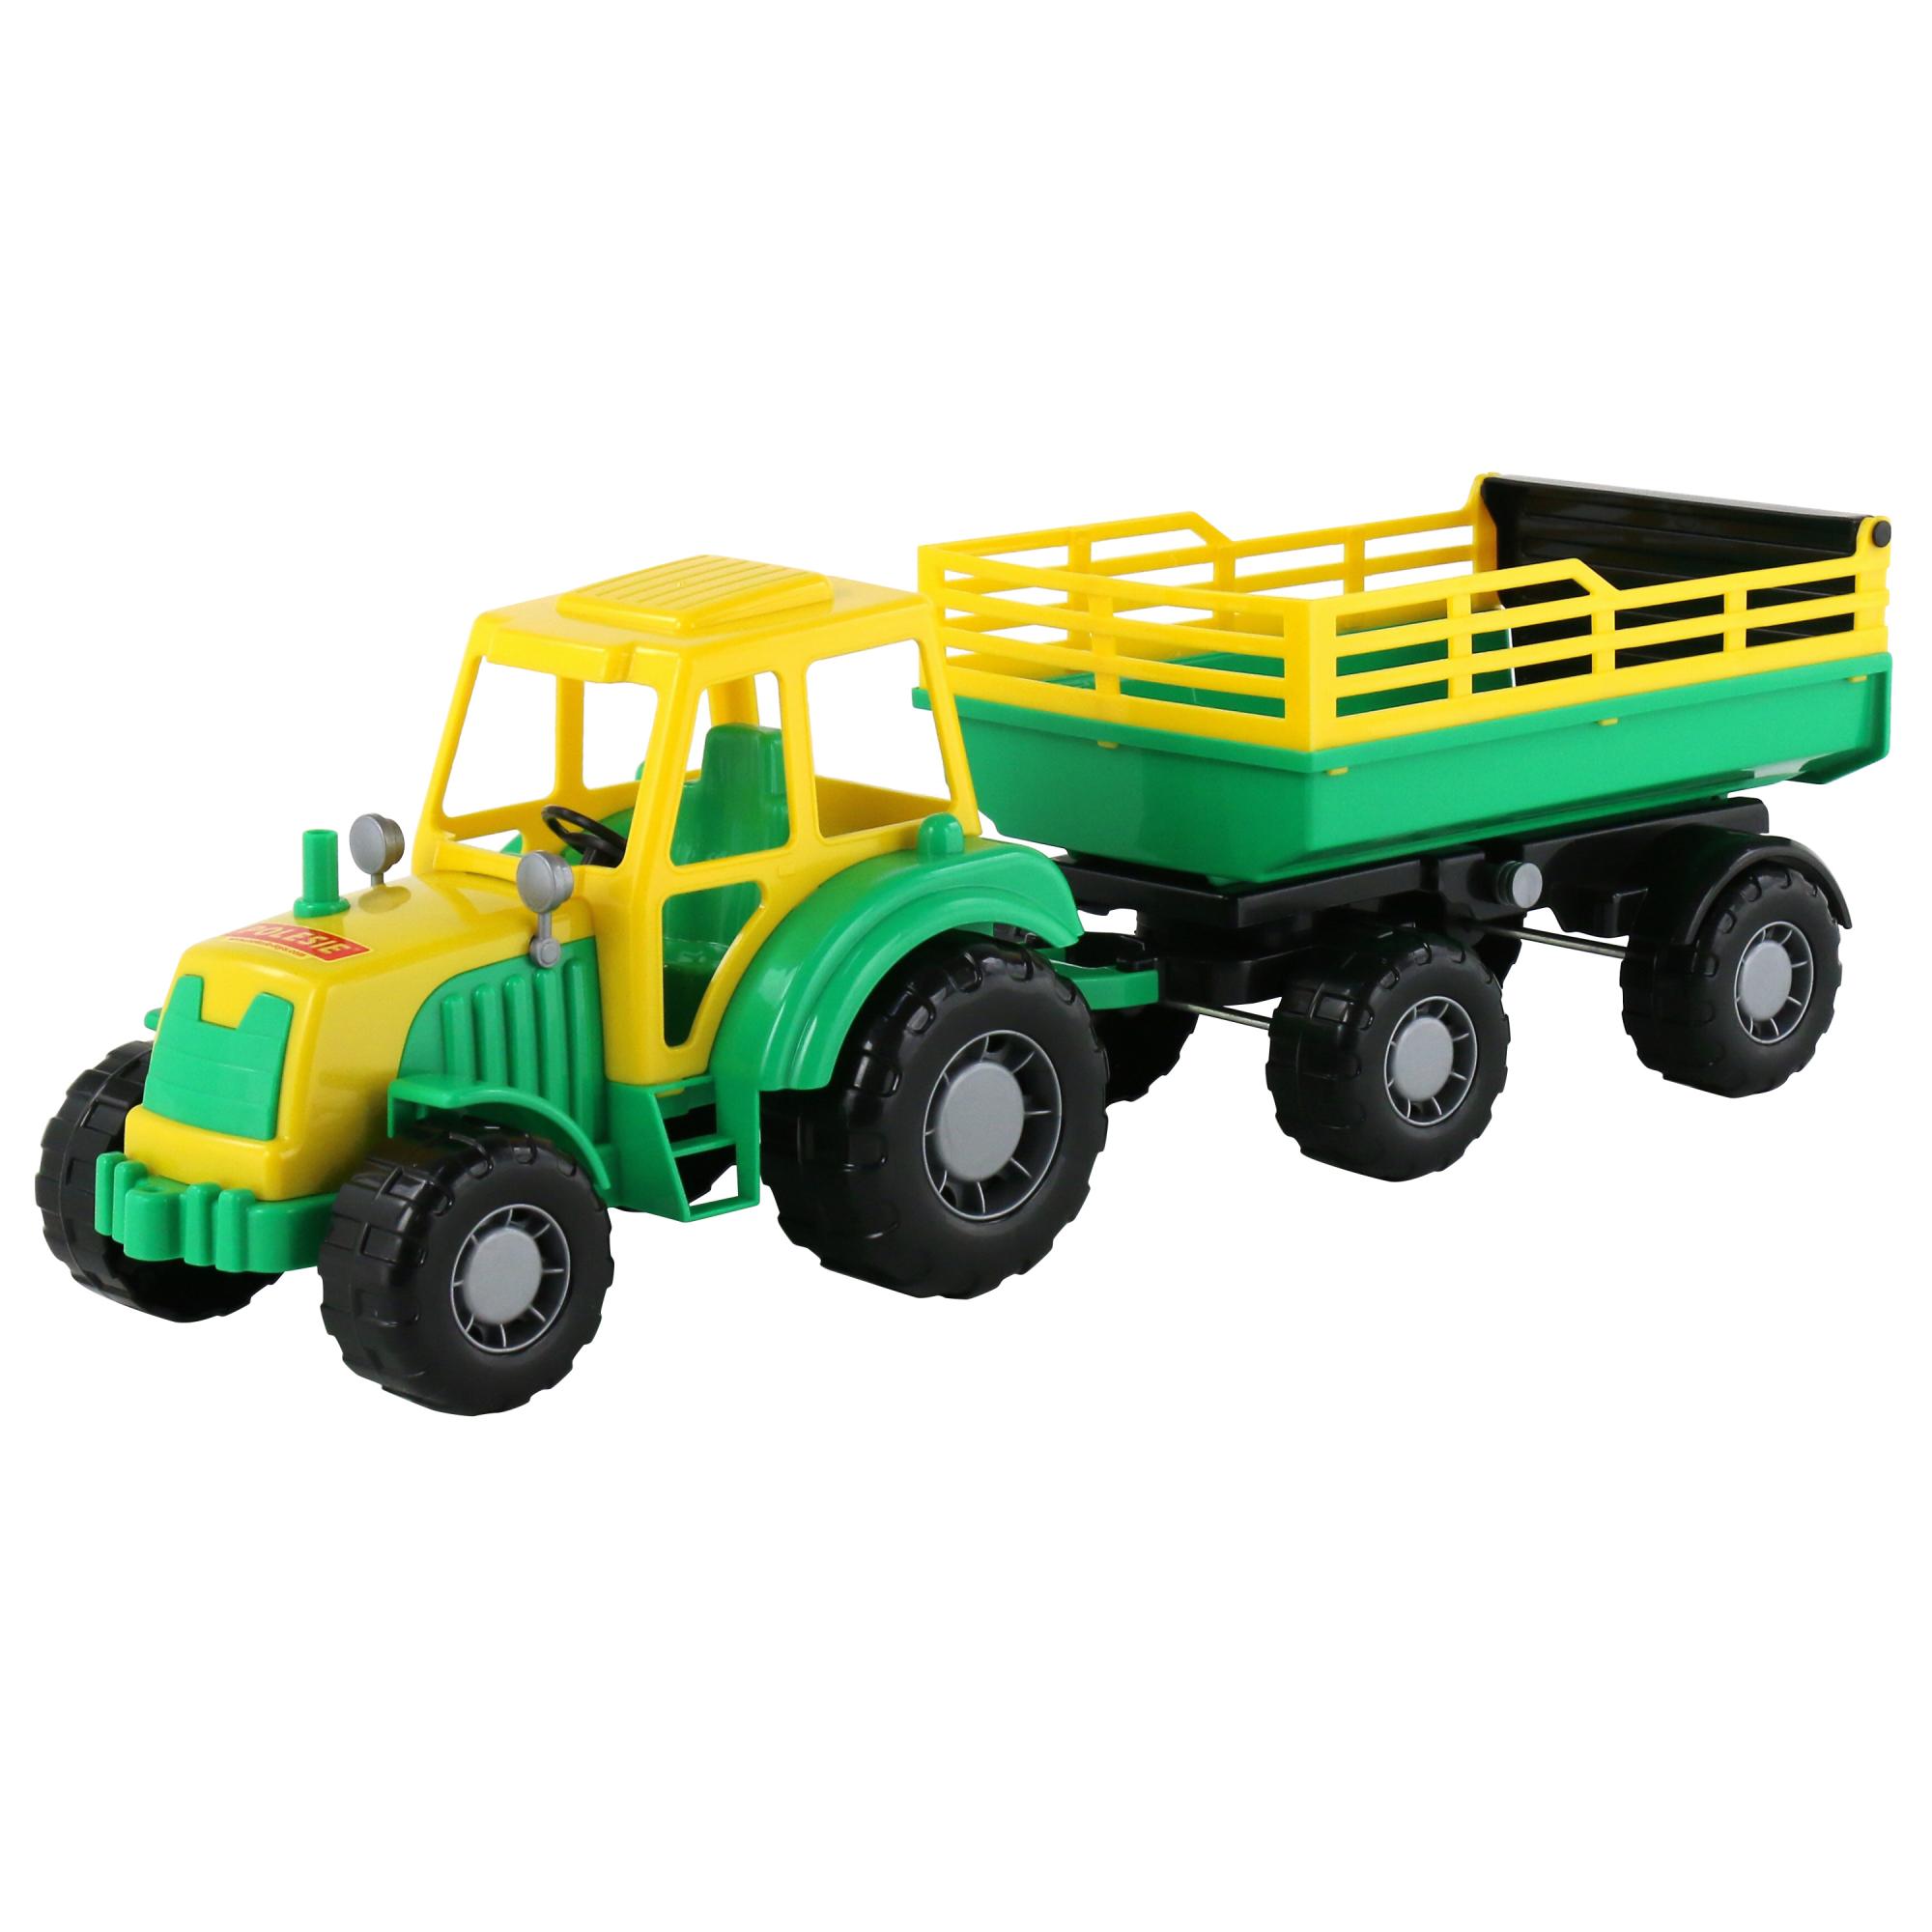 Трактор Алтай с прицепом № 2 Полесье трактор полесье с прицепом 2 алтай зеленый п 35356 зеленый